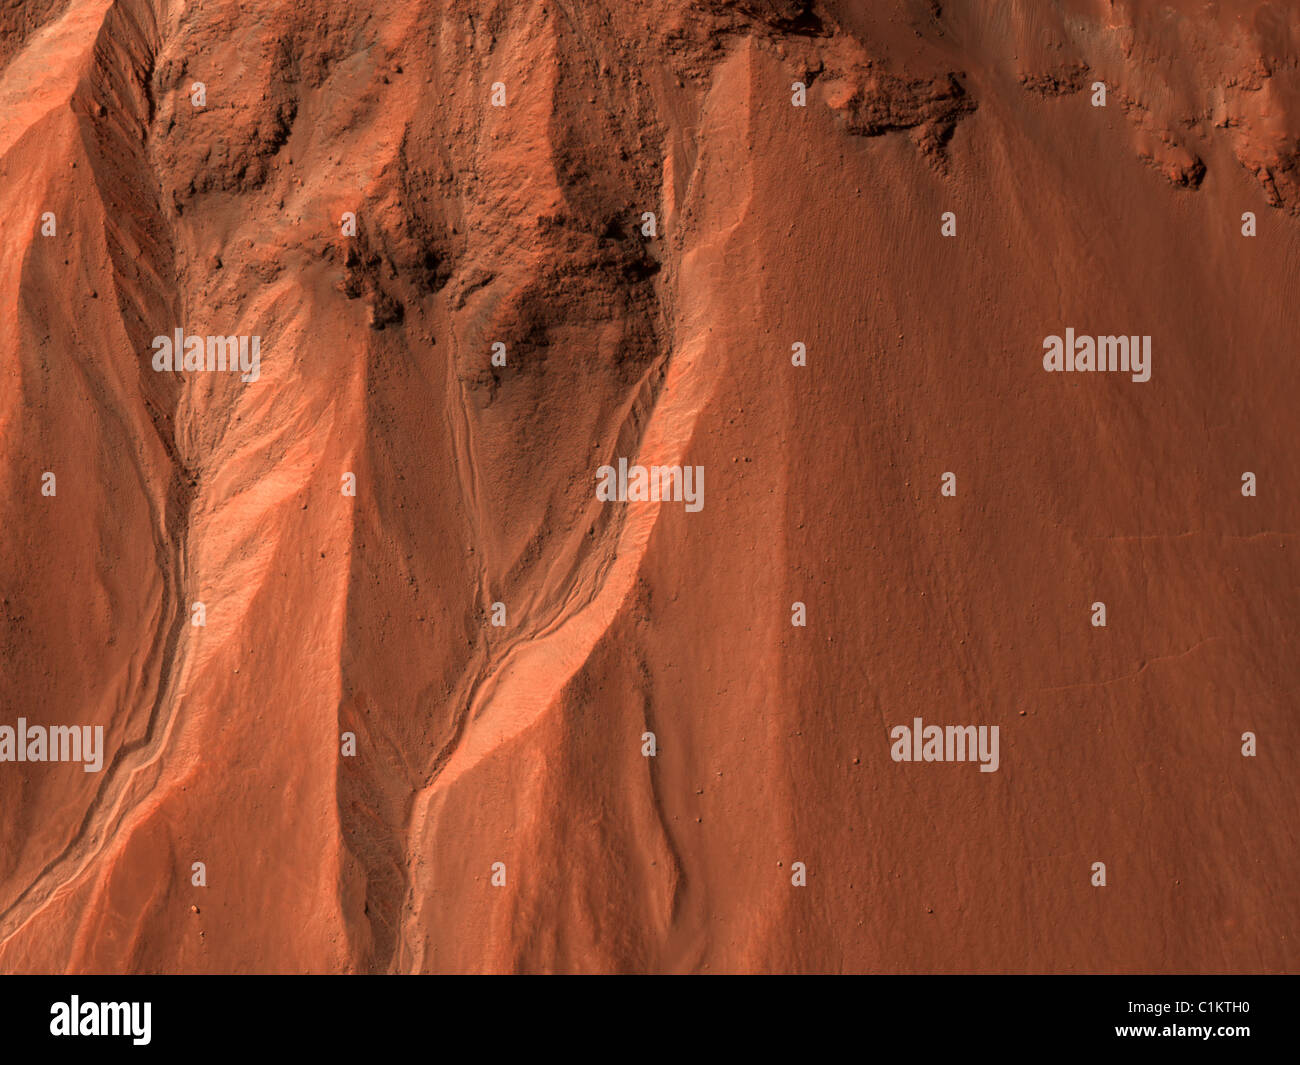 Calanchi in corrispondenza del bordo del cratere Hale (ESP 014153 1430) Credito: la NASA/JPL/University of Arizona Foto Stock